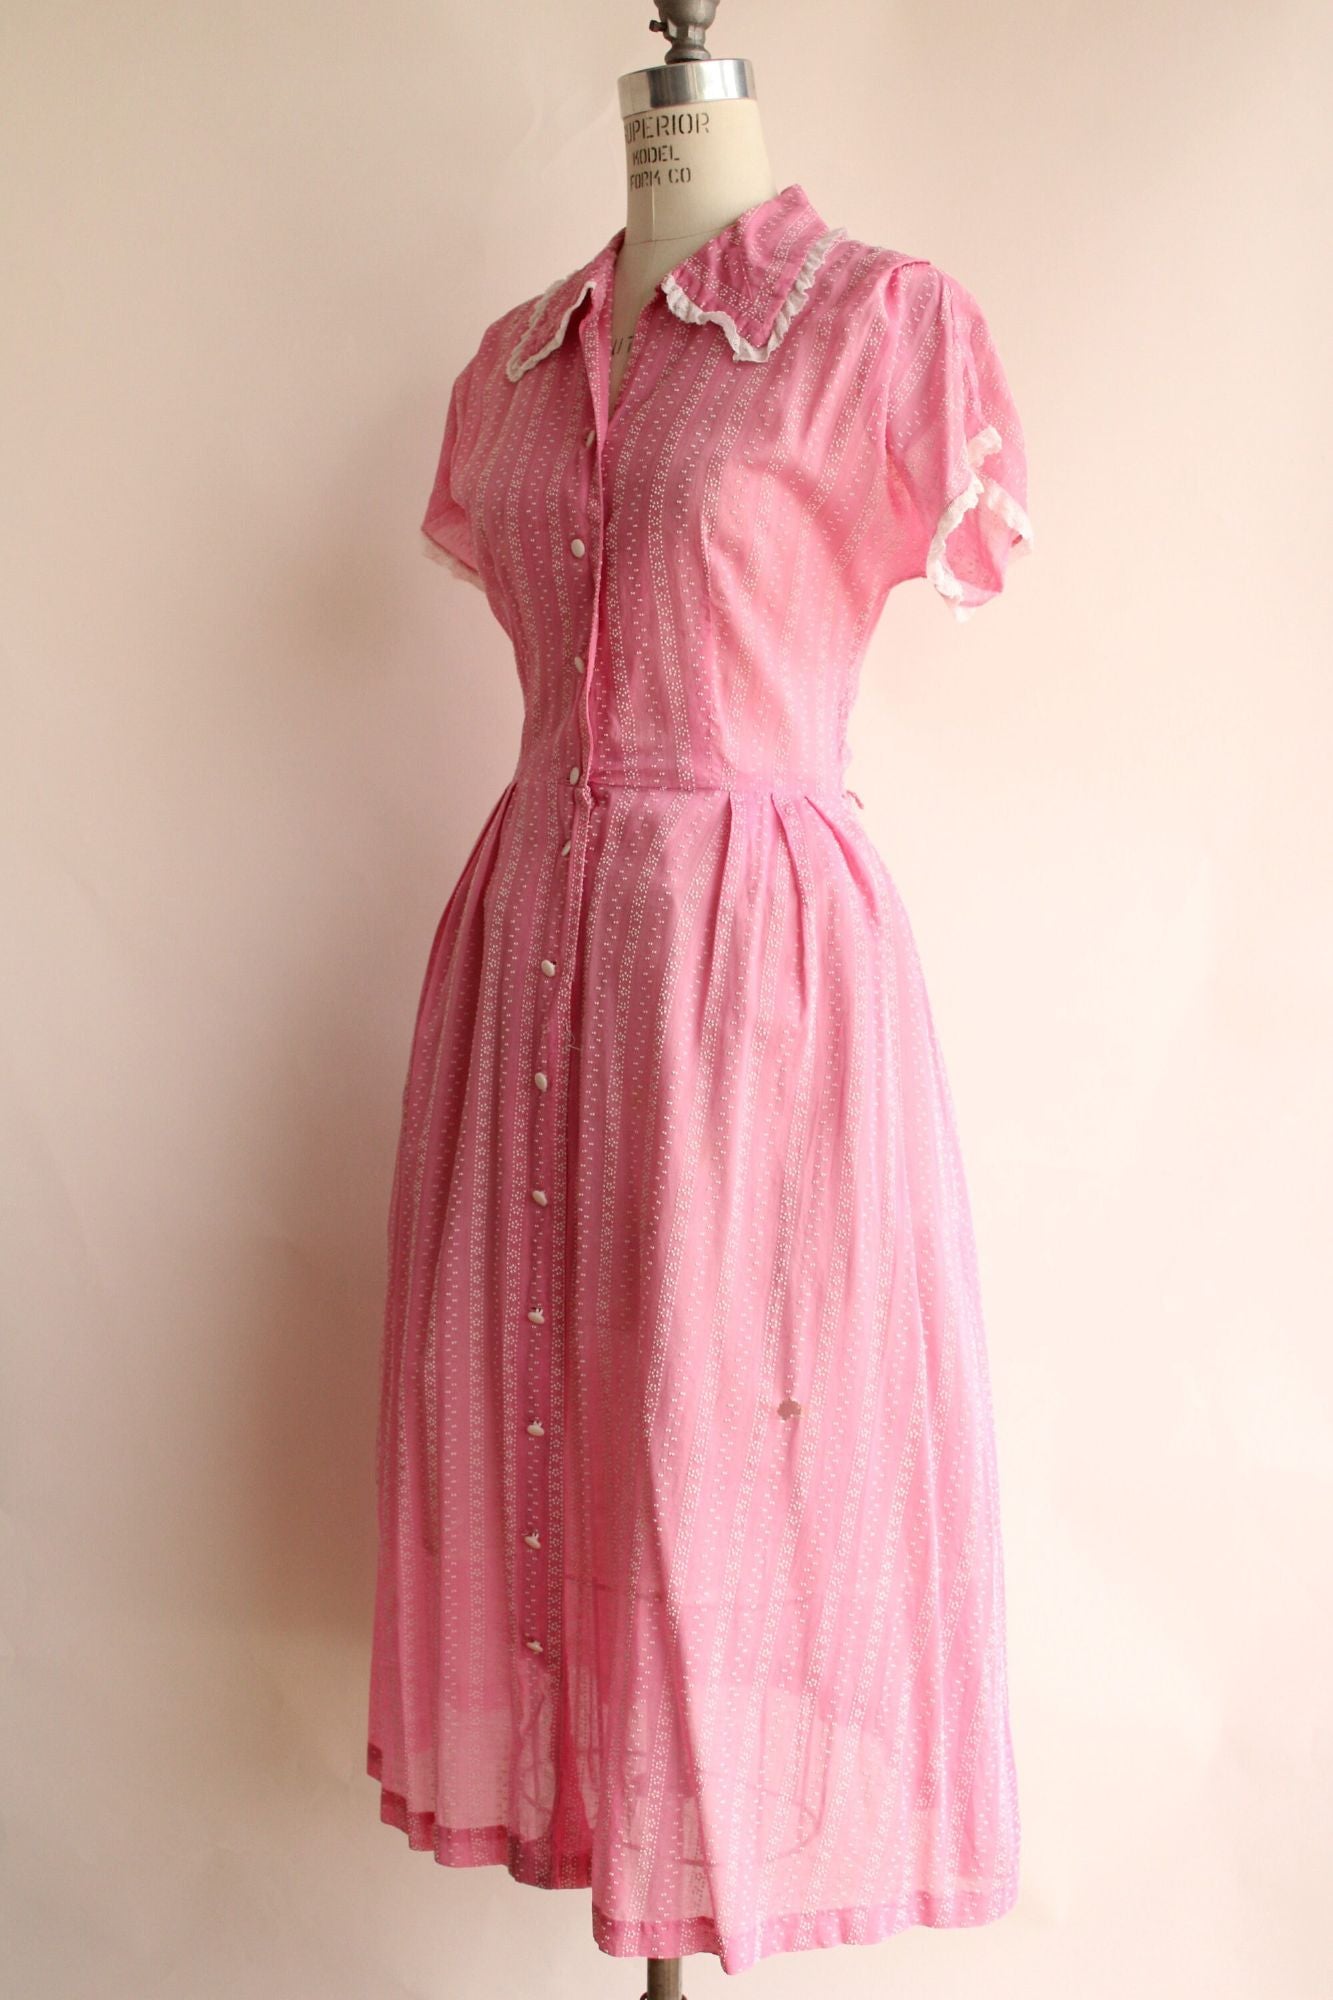 Vintage 1940s 1950s Pink Swiss Dot Cotton Shirtwaist Dress